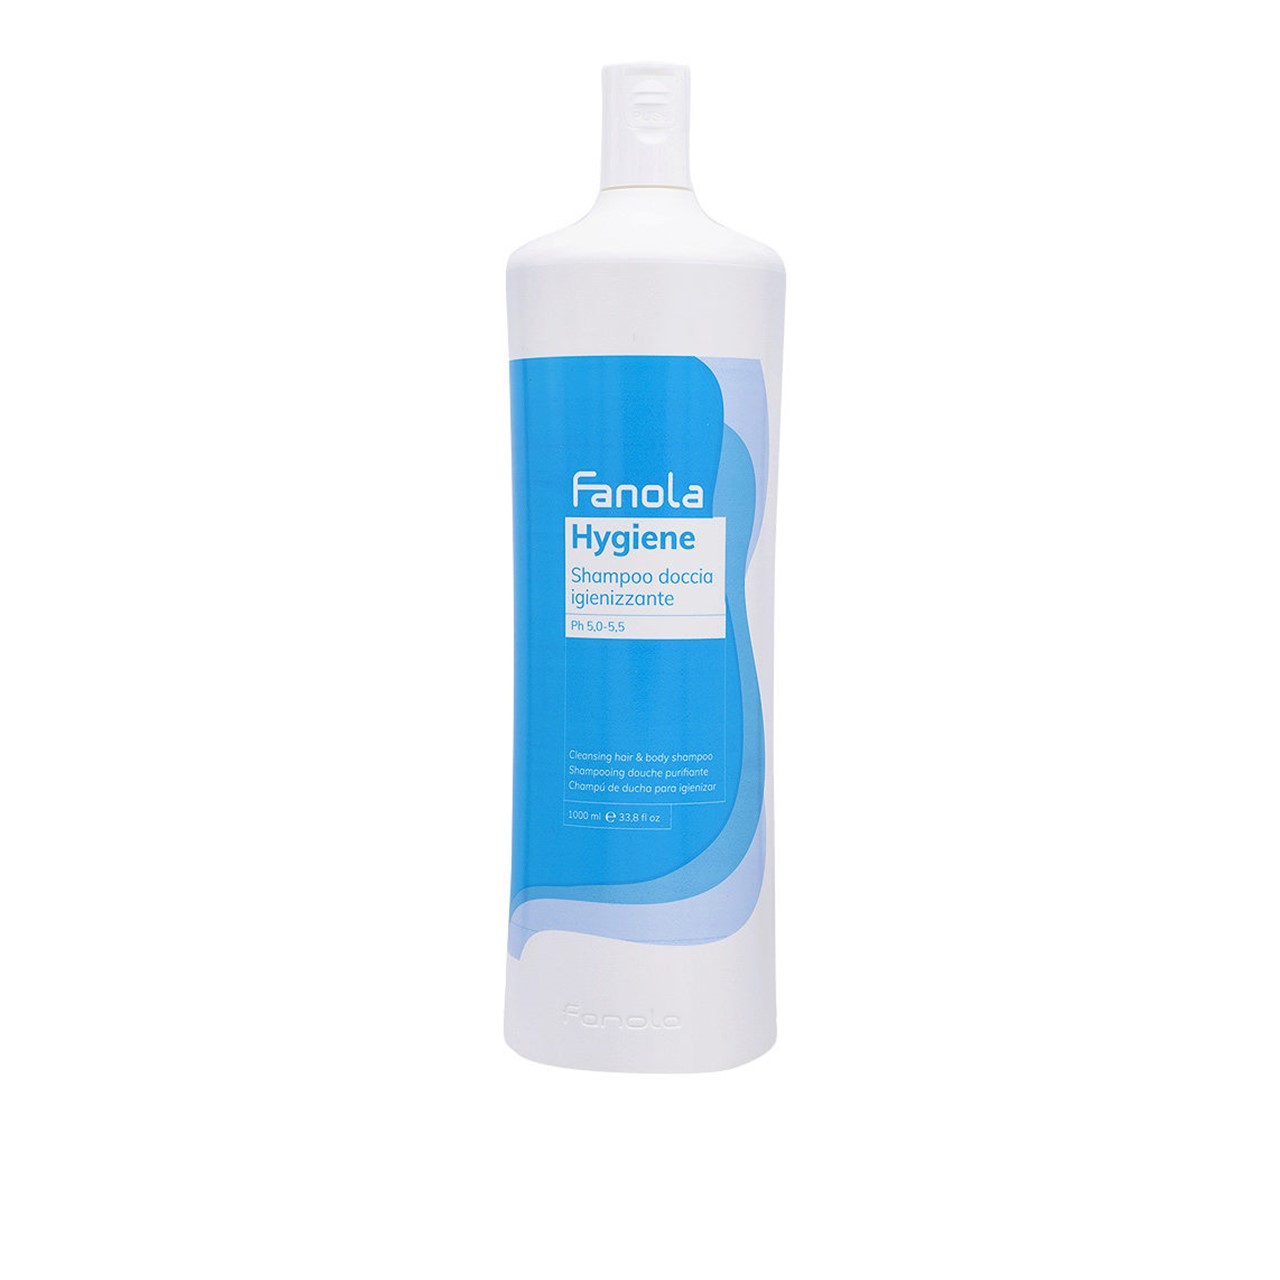 Fanola Hygiene Cleansing Hair & Body Shampoo 1L (33.8 fl oz)